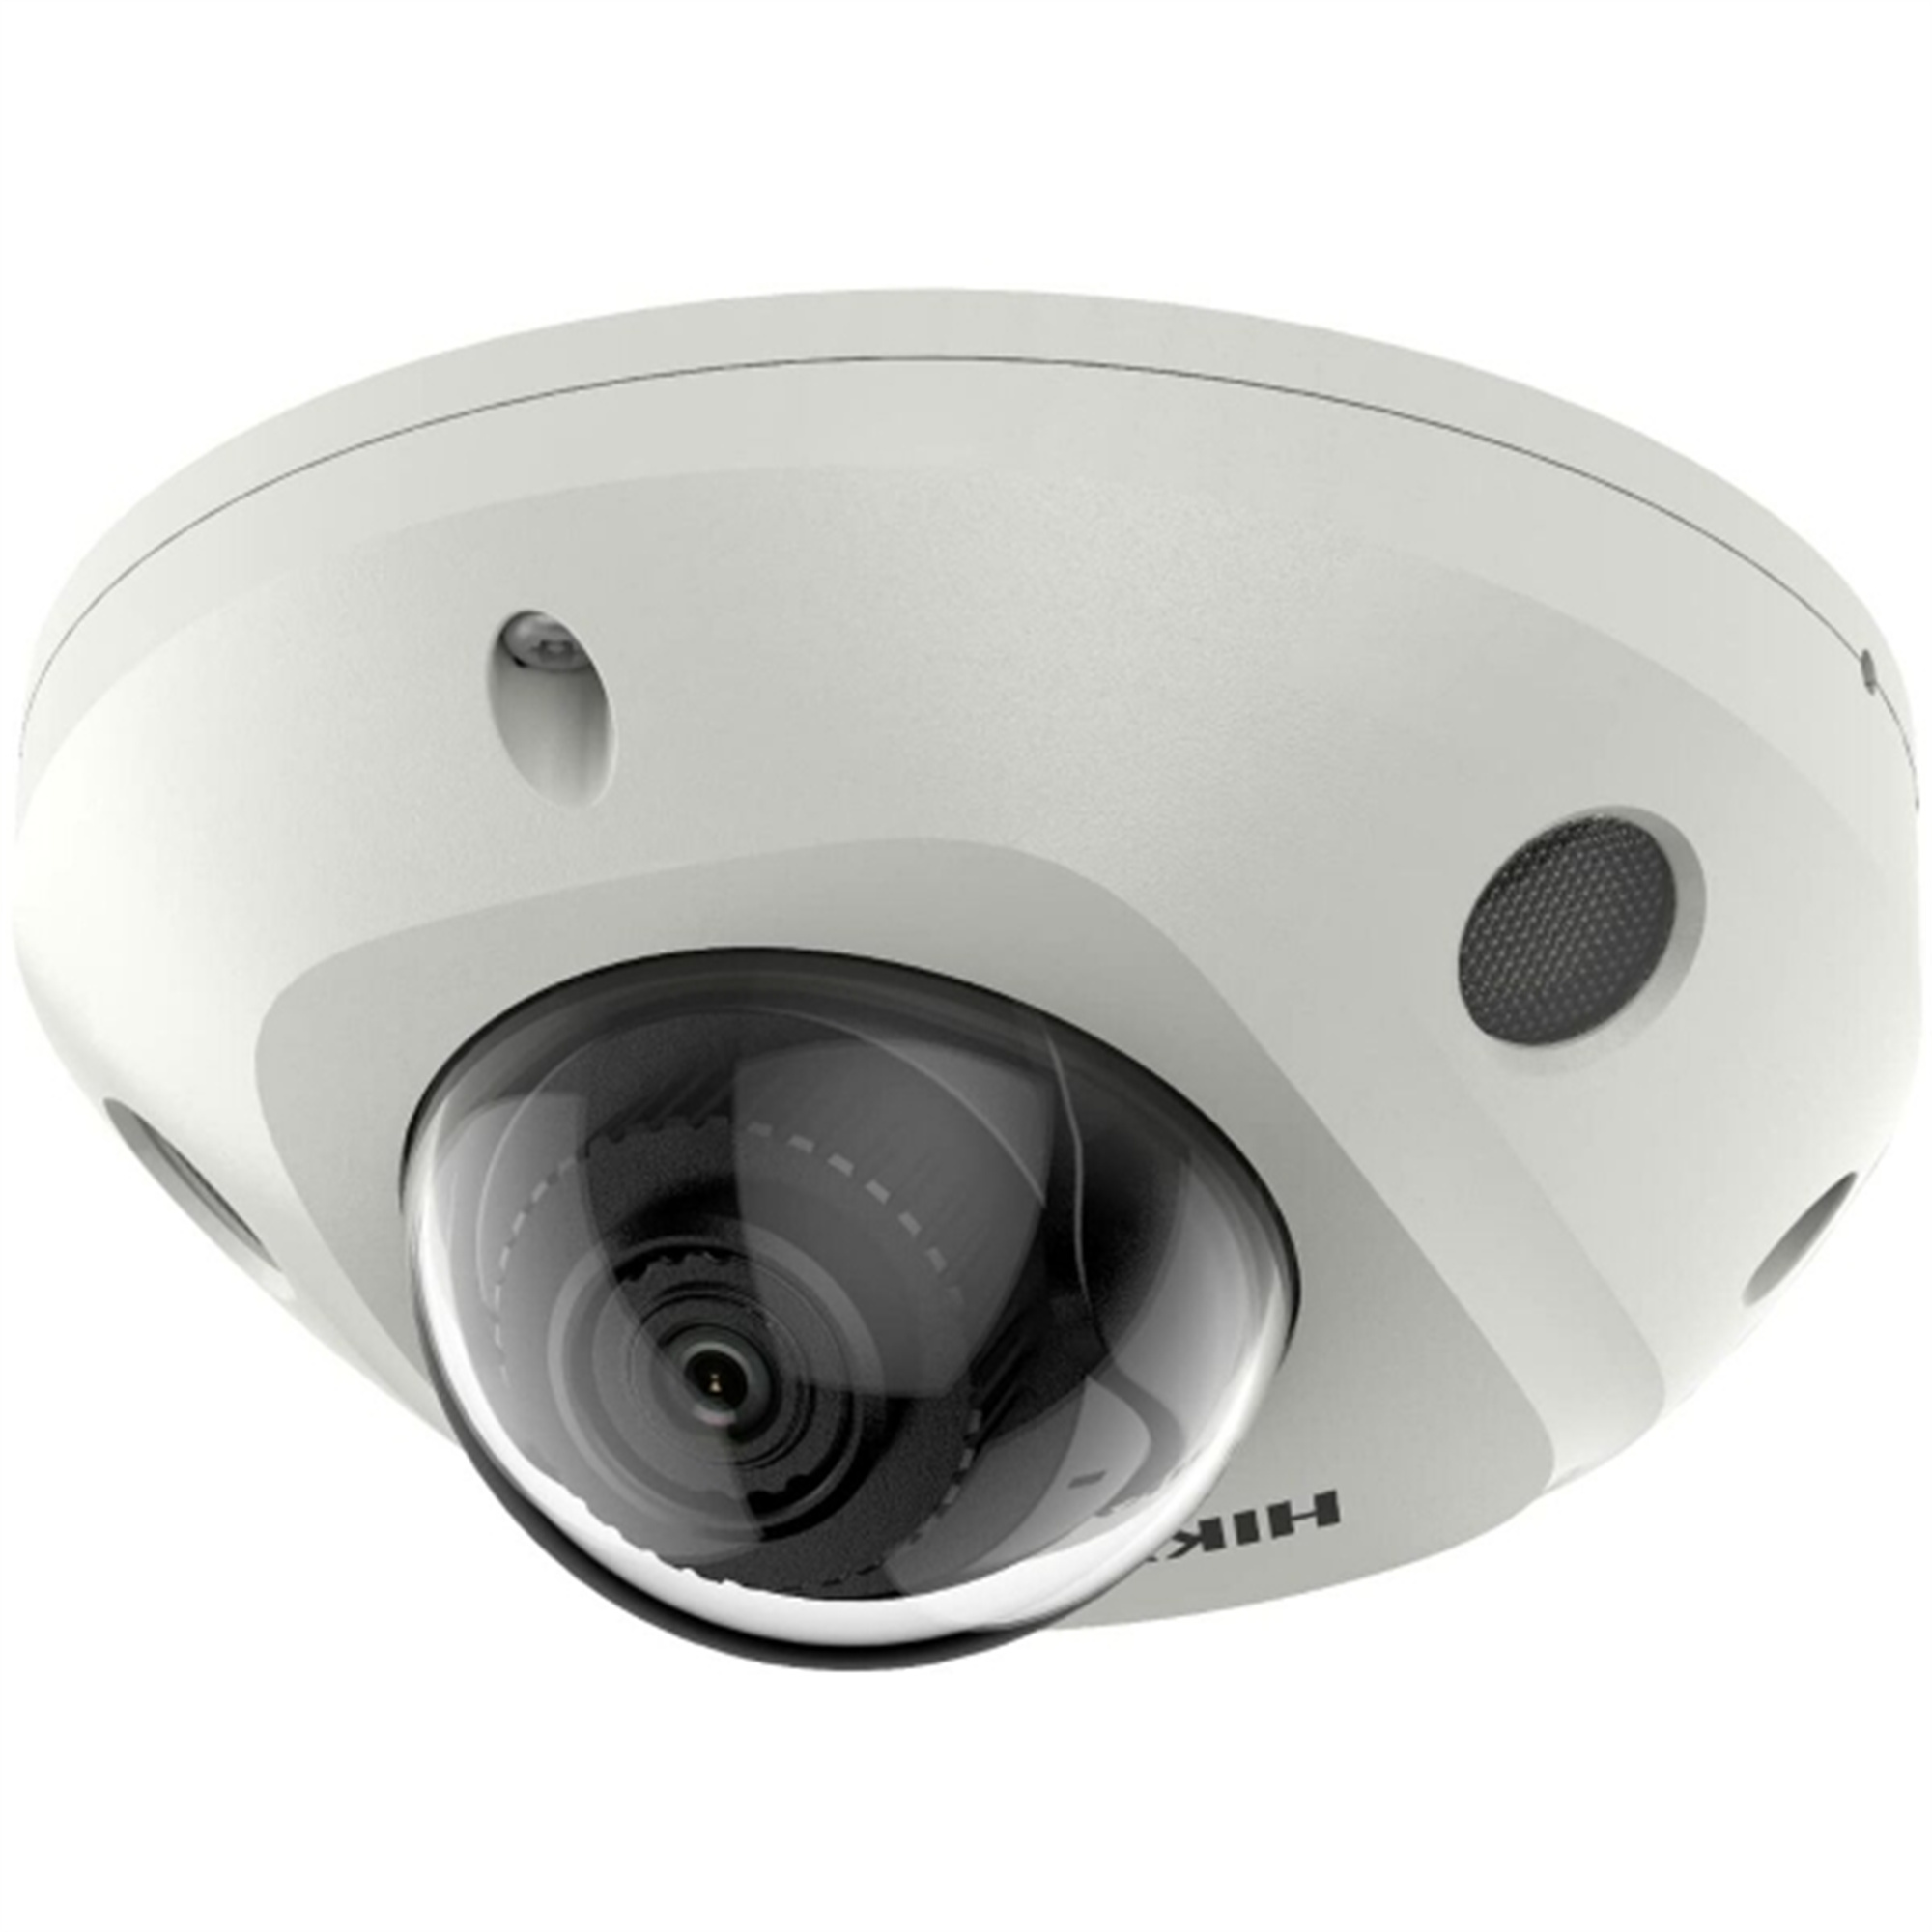 DOTMALL S9107171, Indoor-Webcam